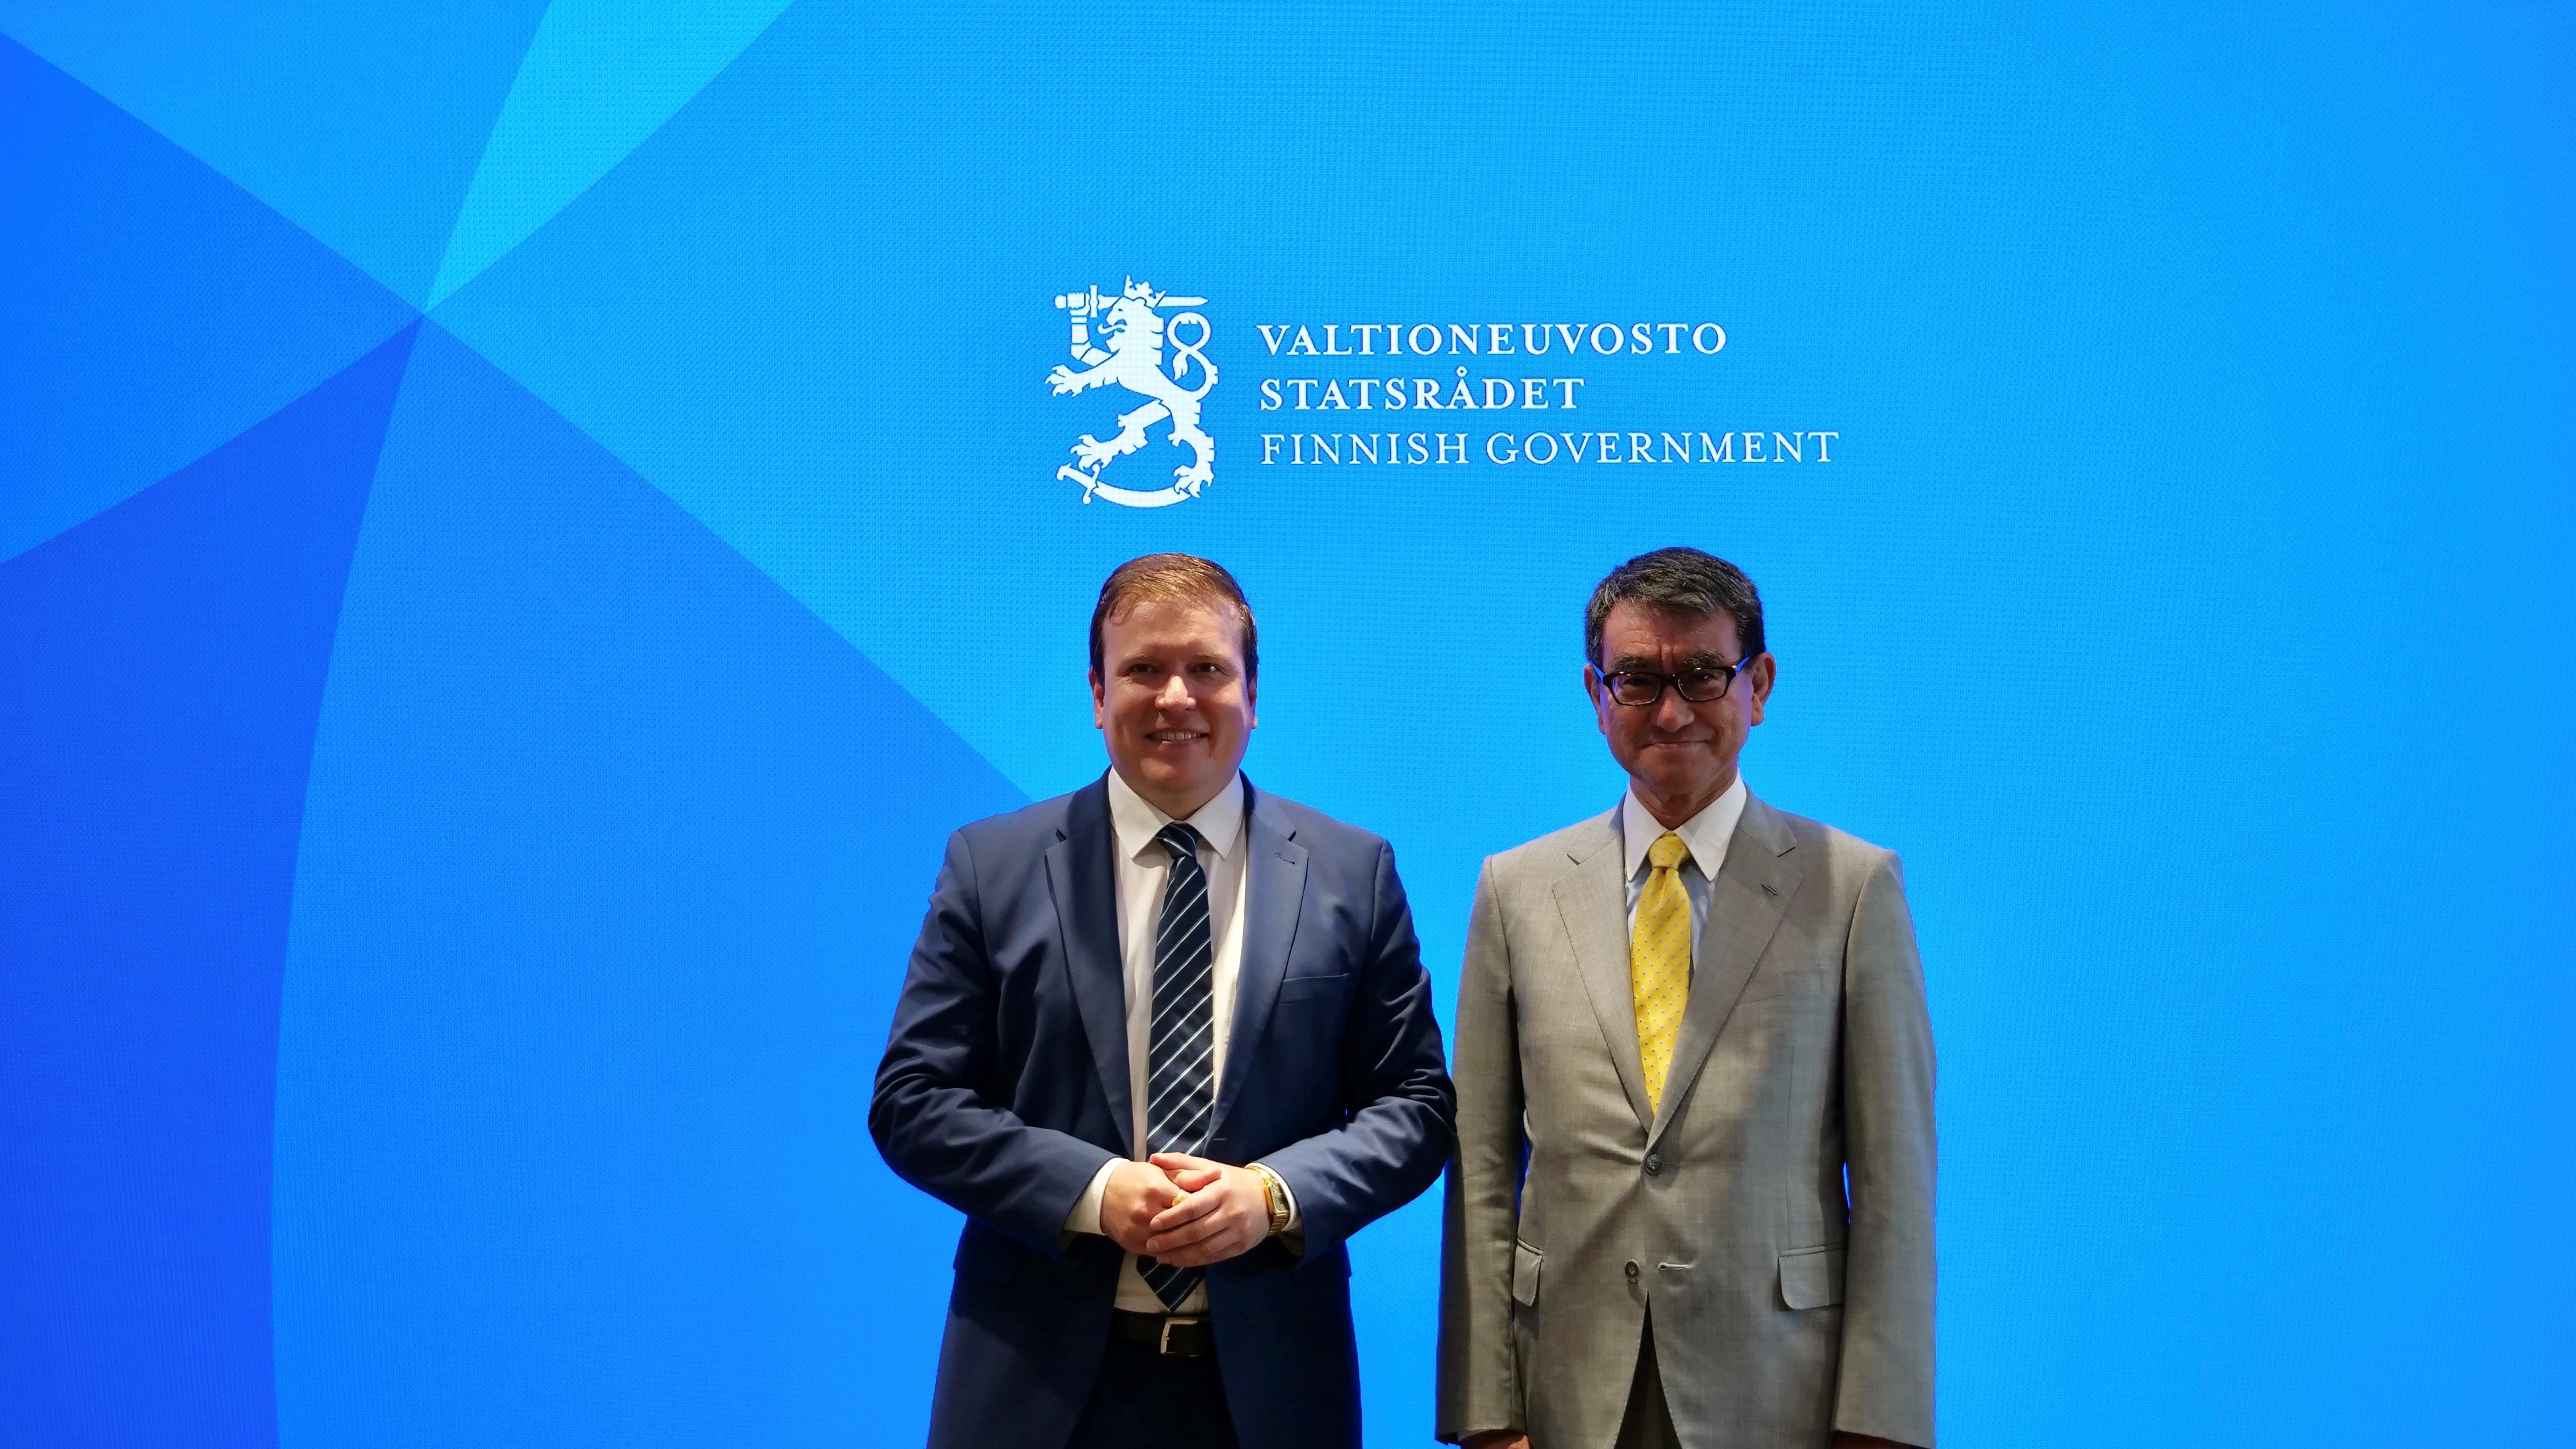 左にヴィッレ・タヴィオ外国貿易・開発大臣、右に河野デジタル大臣が並んで写っている。